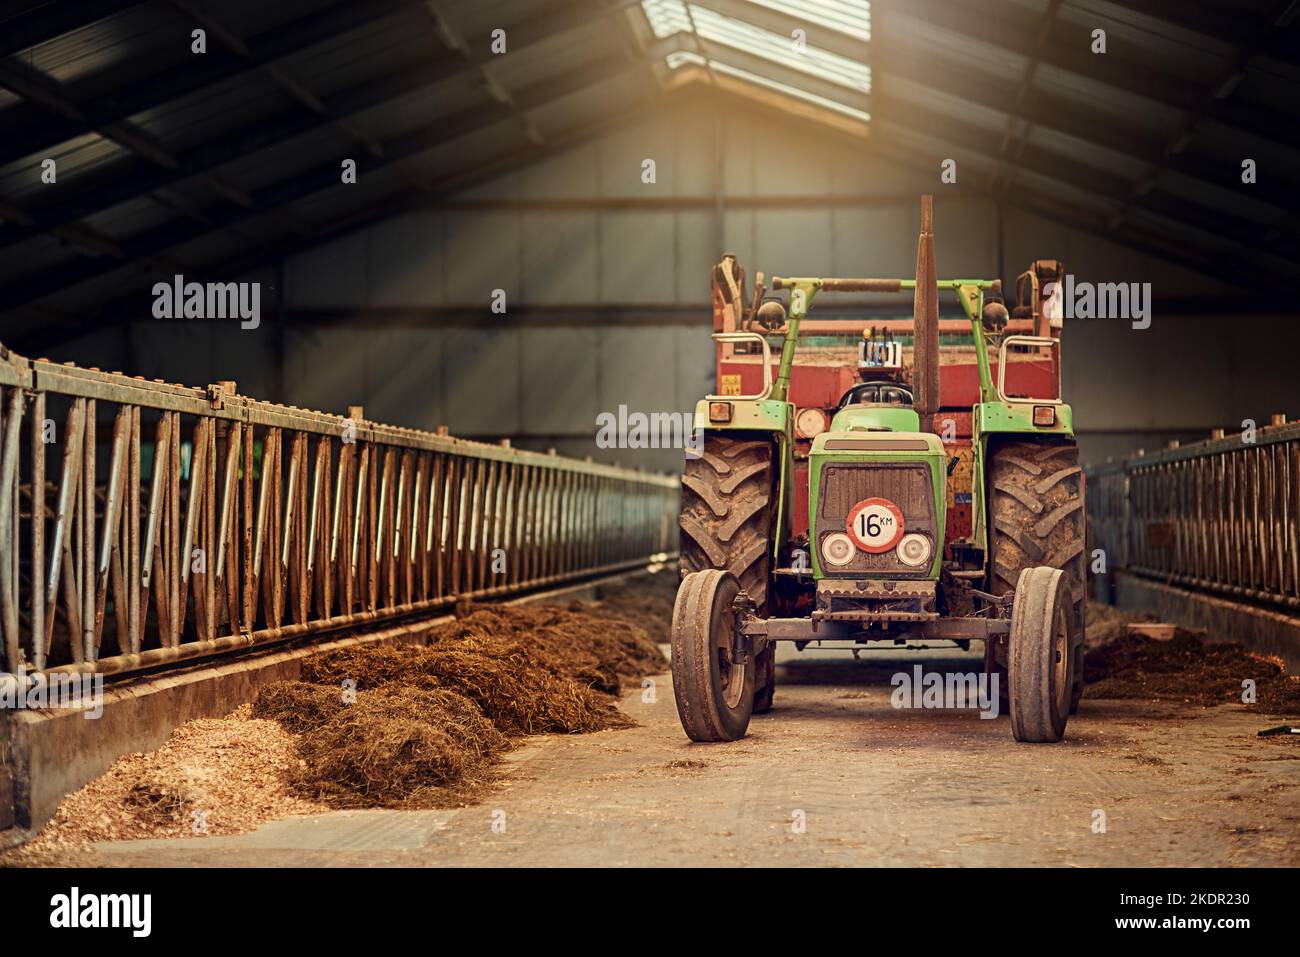 Il vero cavallo da lavoro di questa fattoria. Un vecchio trattore arrugginito in piedi in un fienile vuoto. Foto Stock